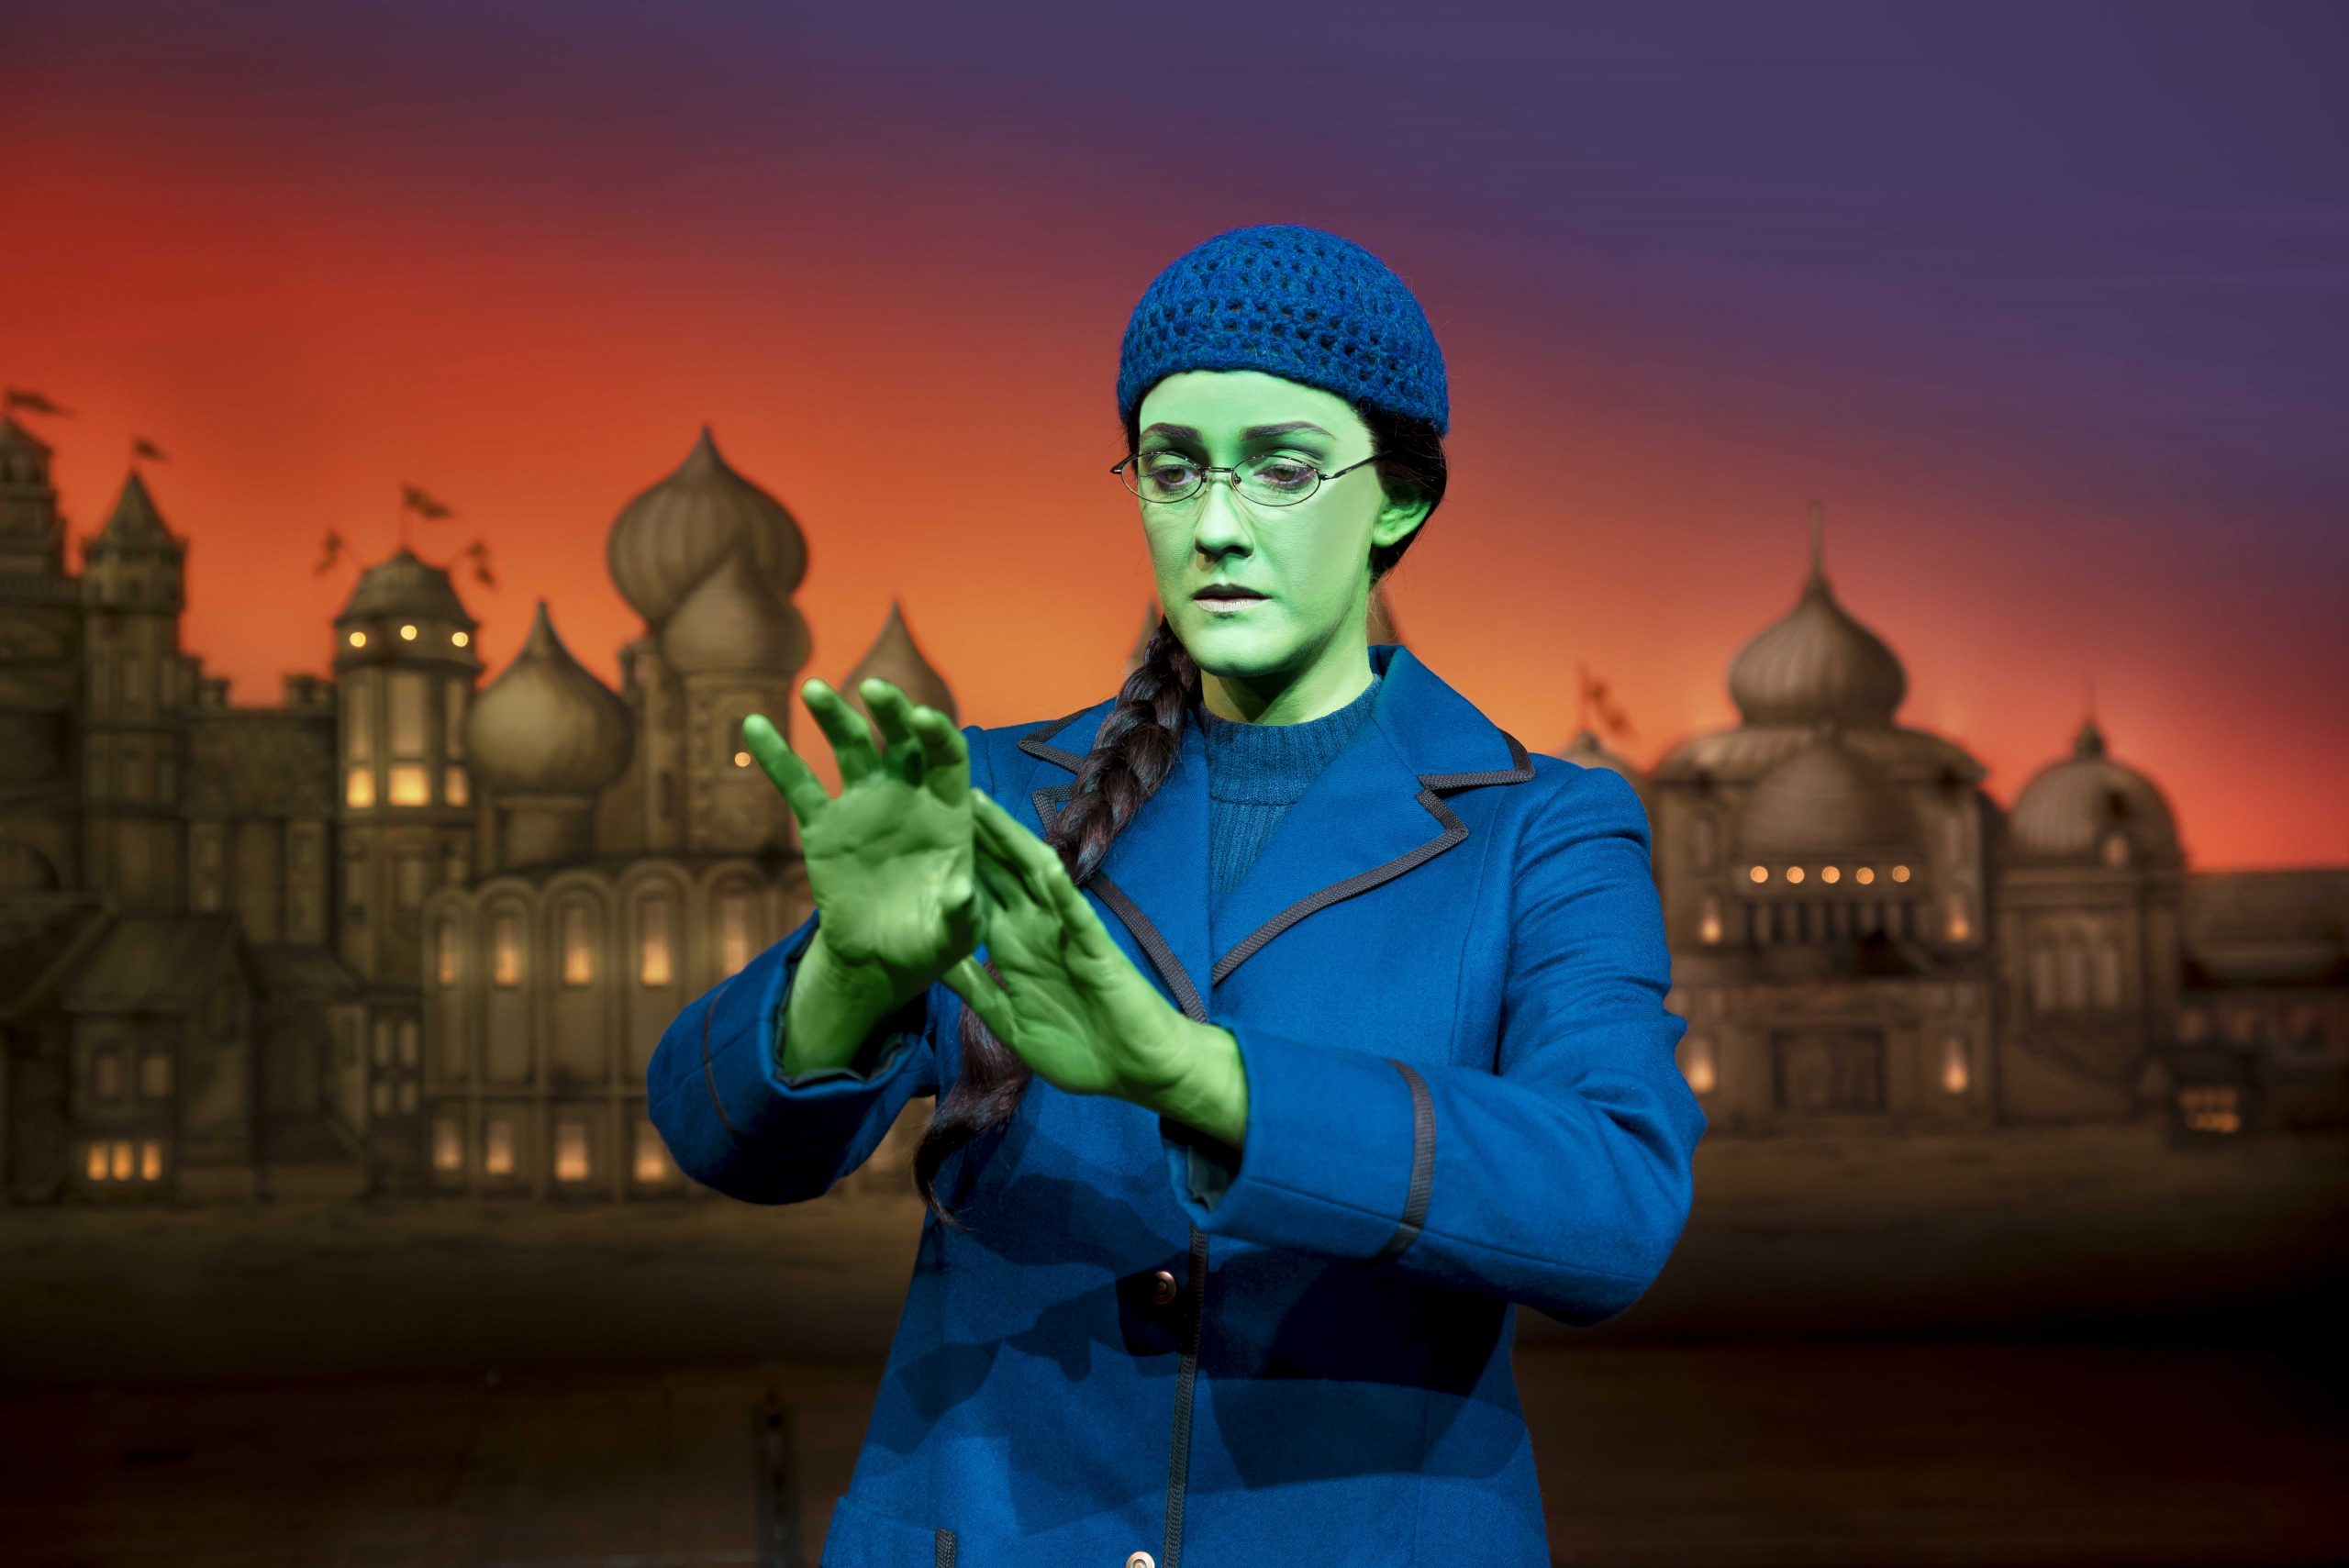 The Fantasy World of Oz at Apollo Victoria Theatre - Halloween Celebrations in London